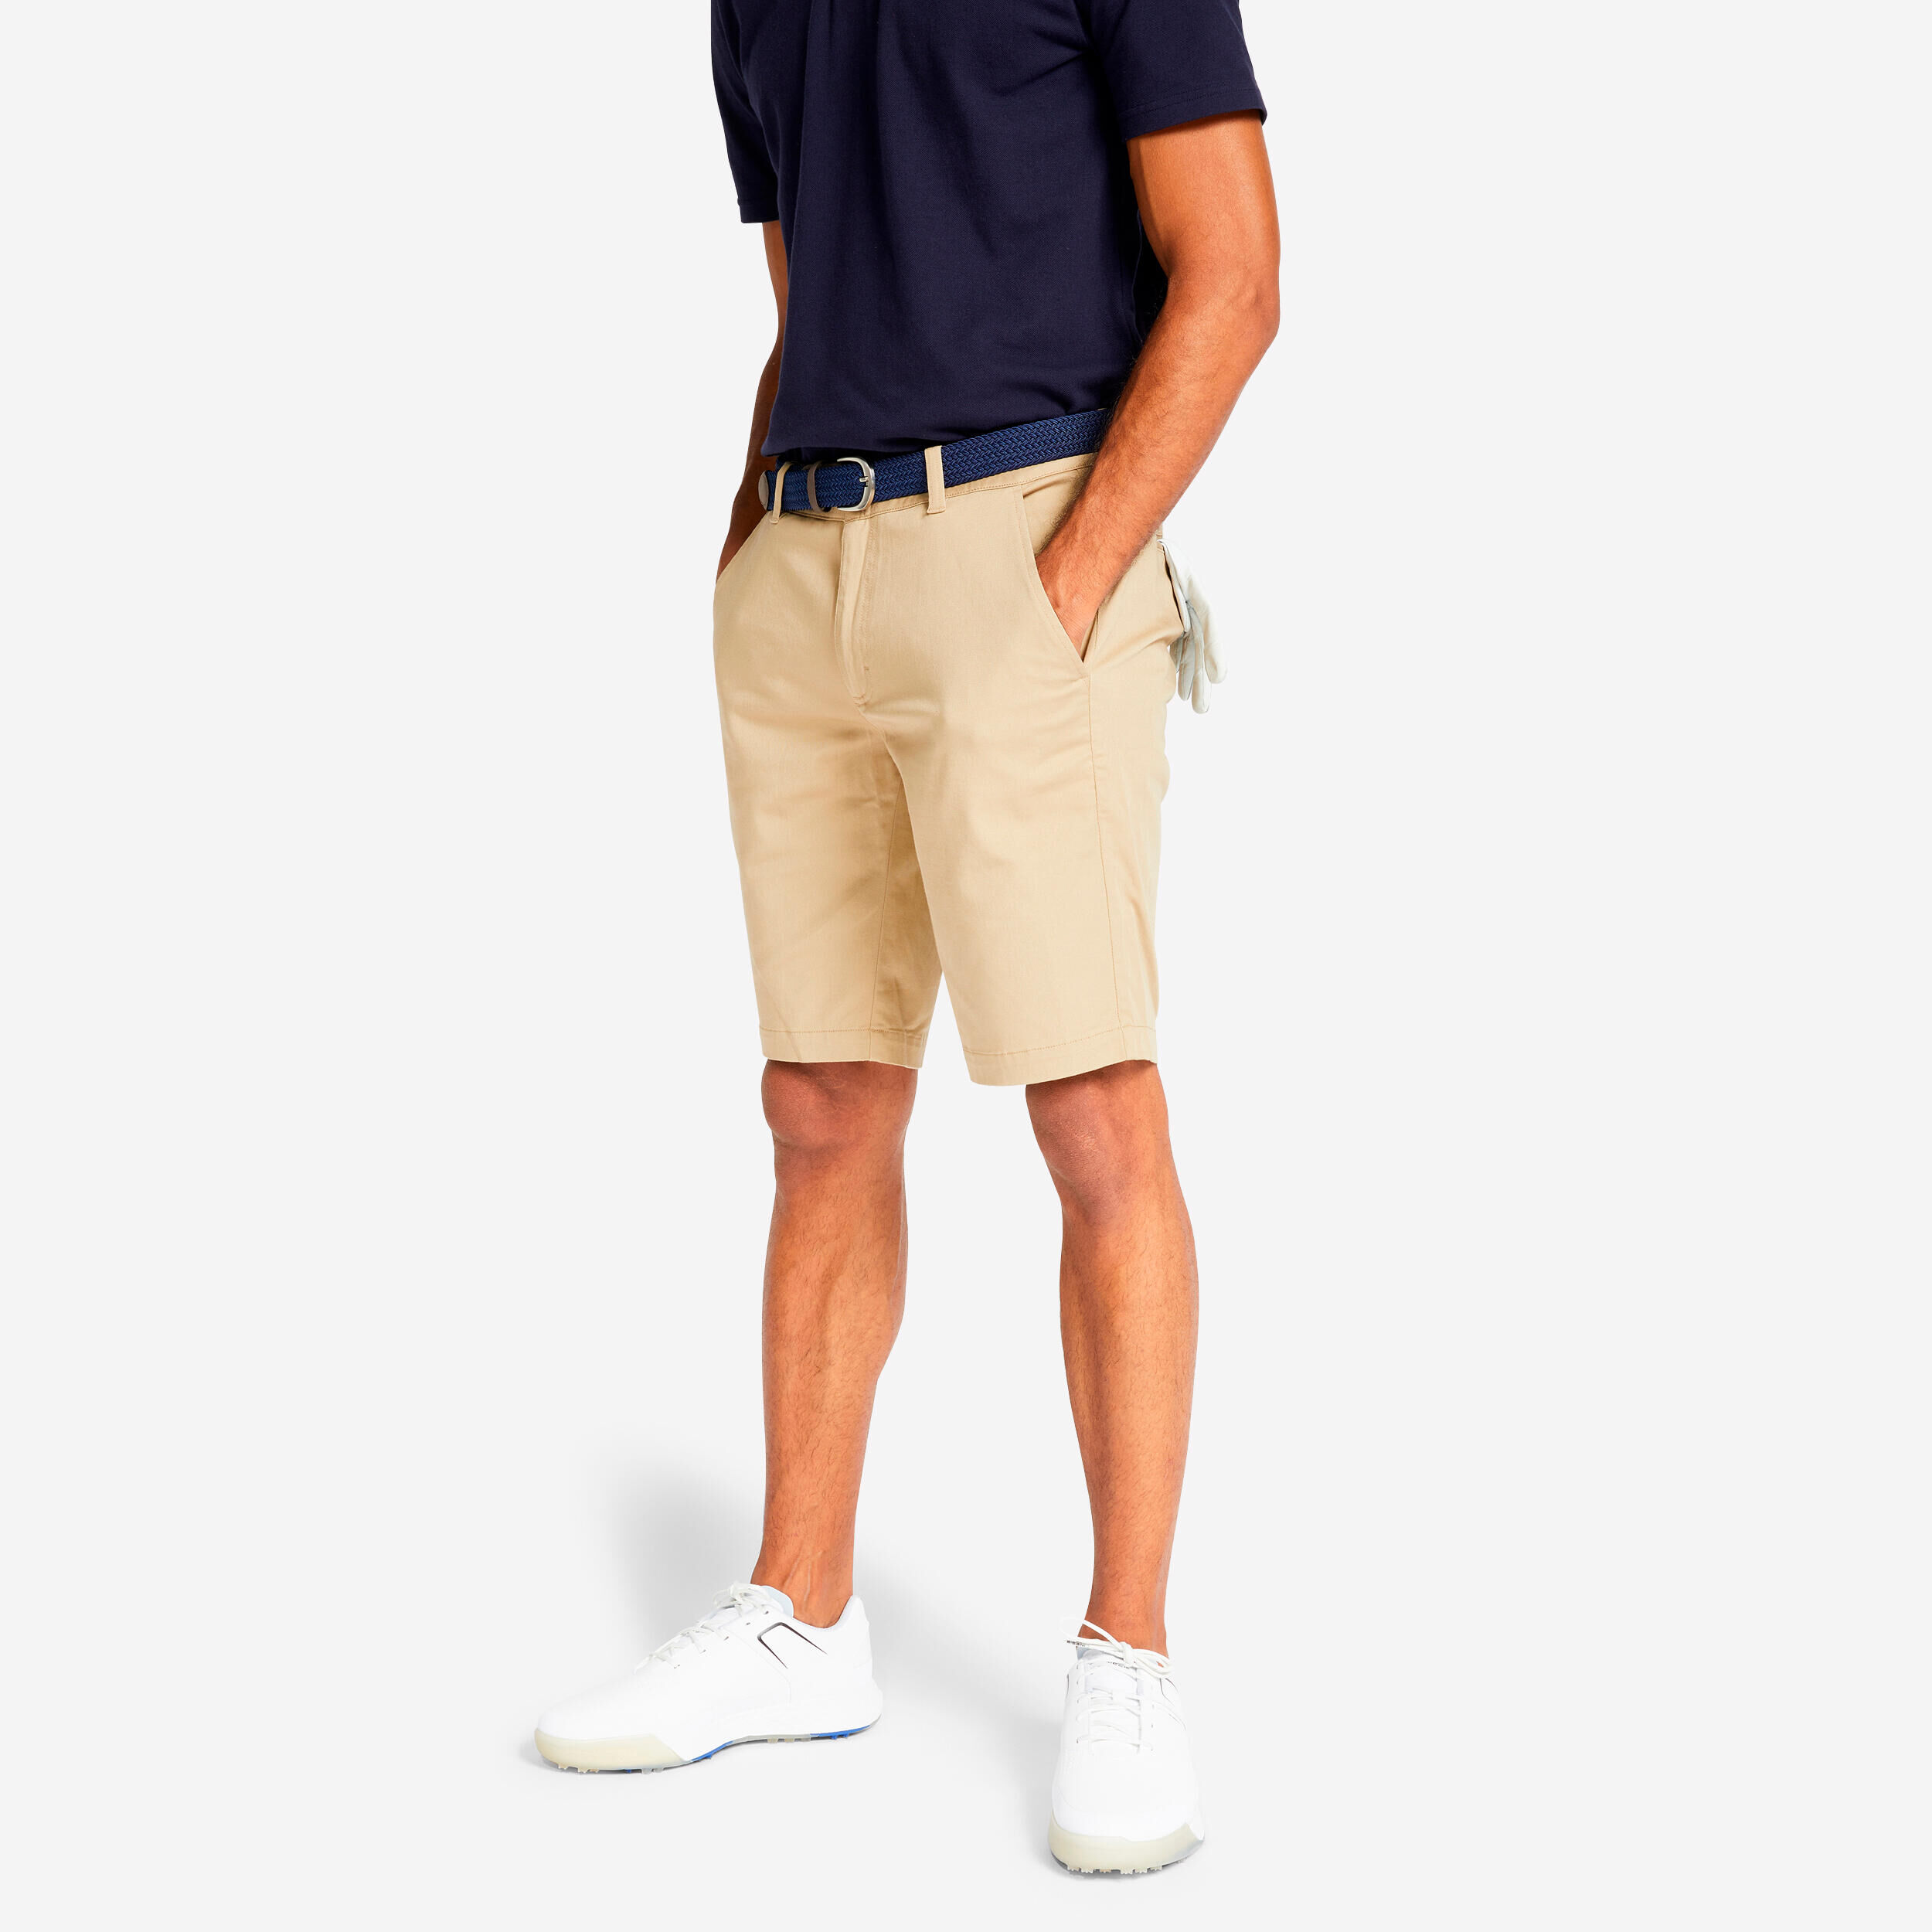 INESIS Men's golf chino shorts - MW500 beige